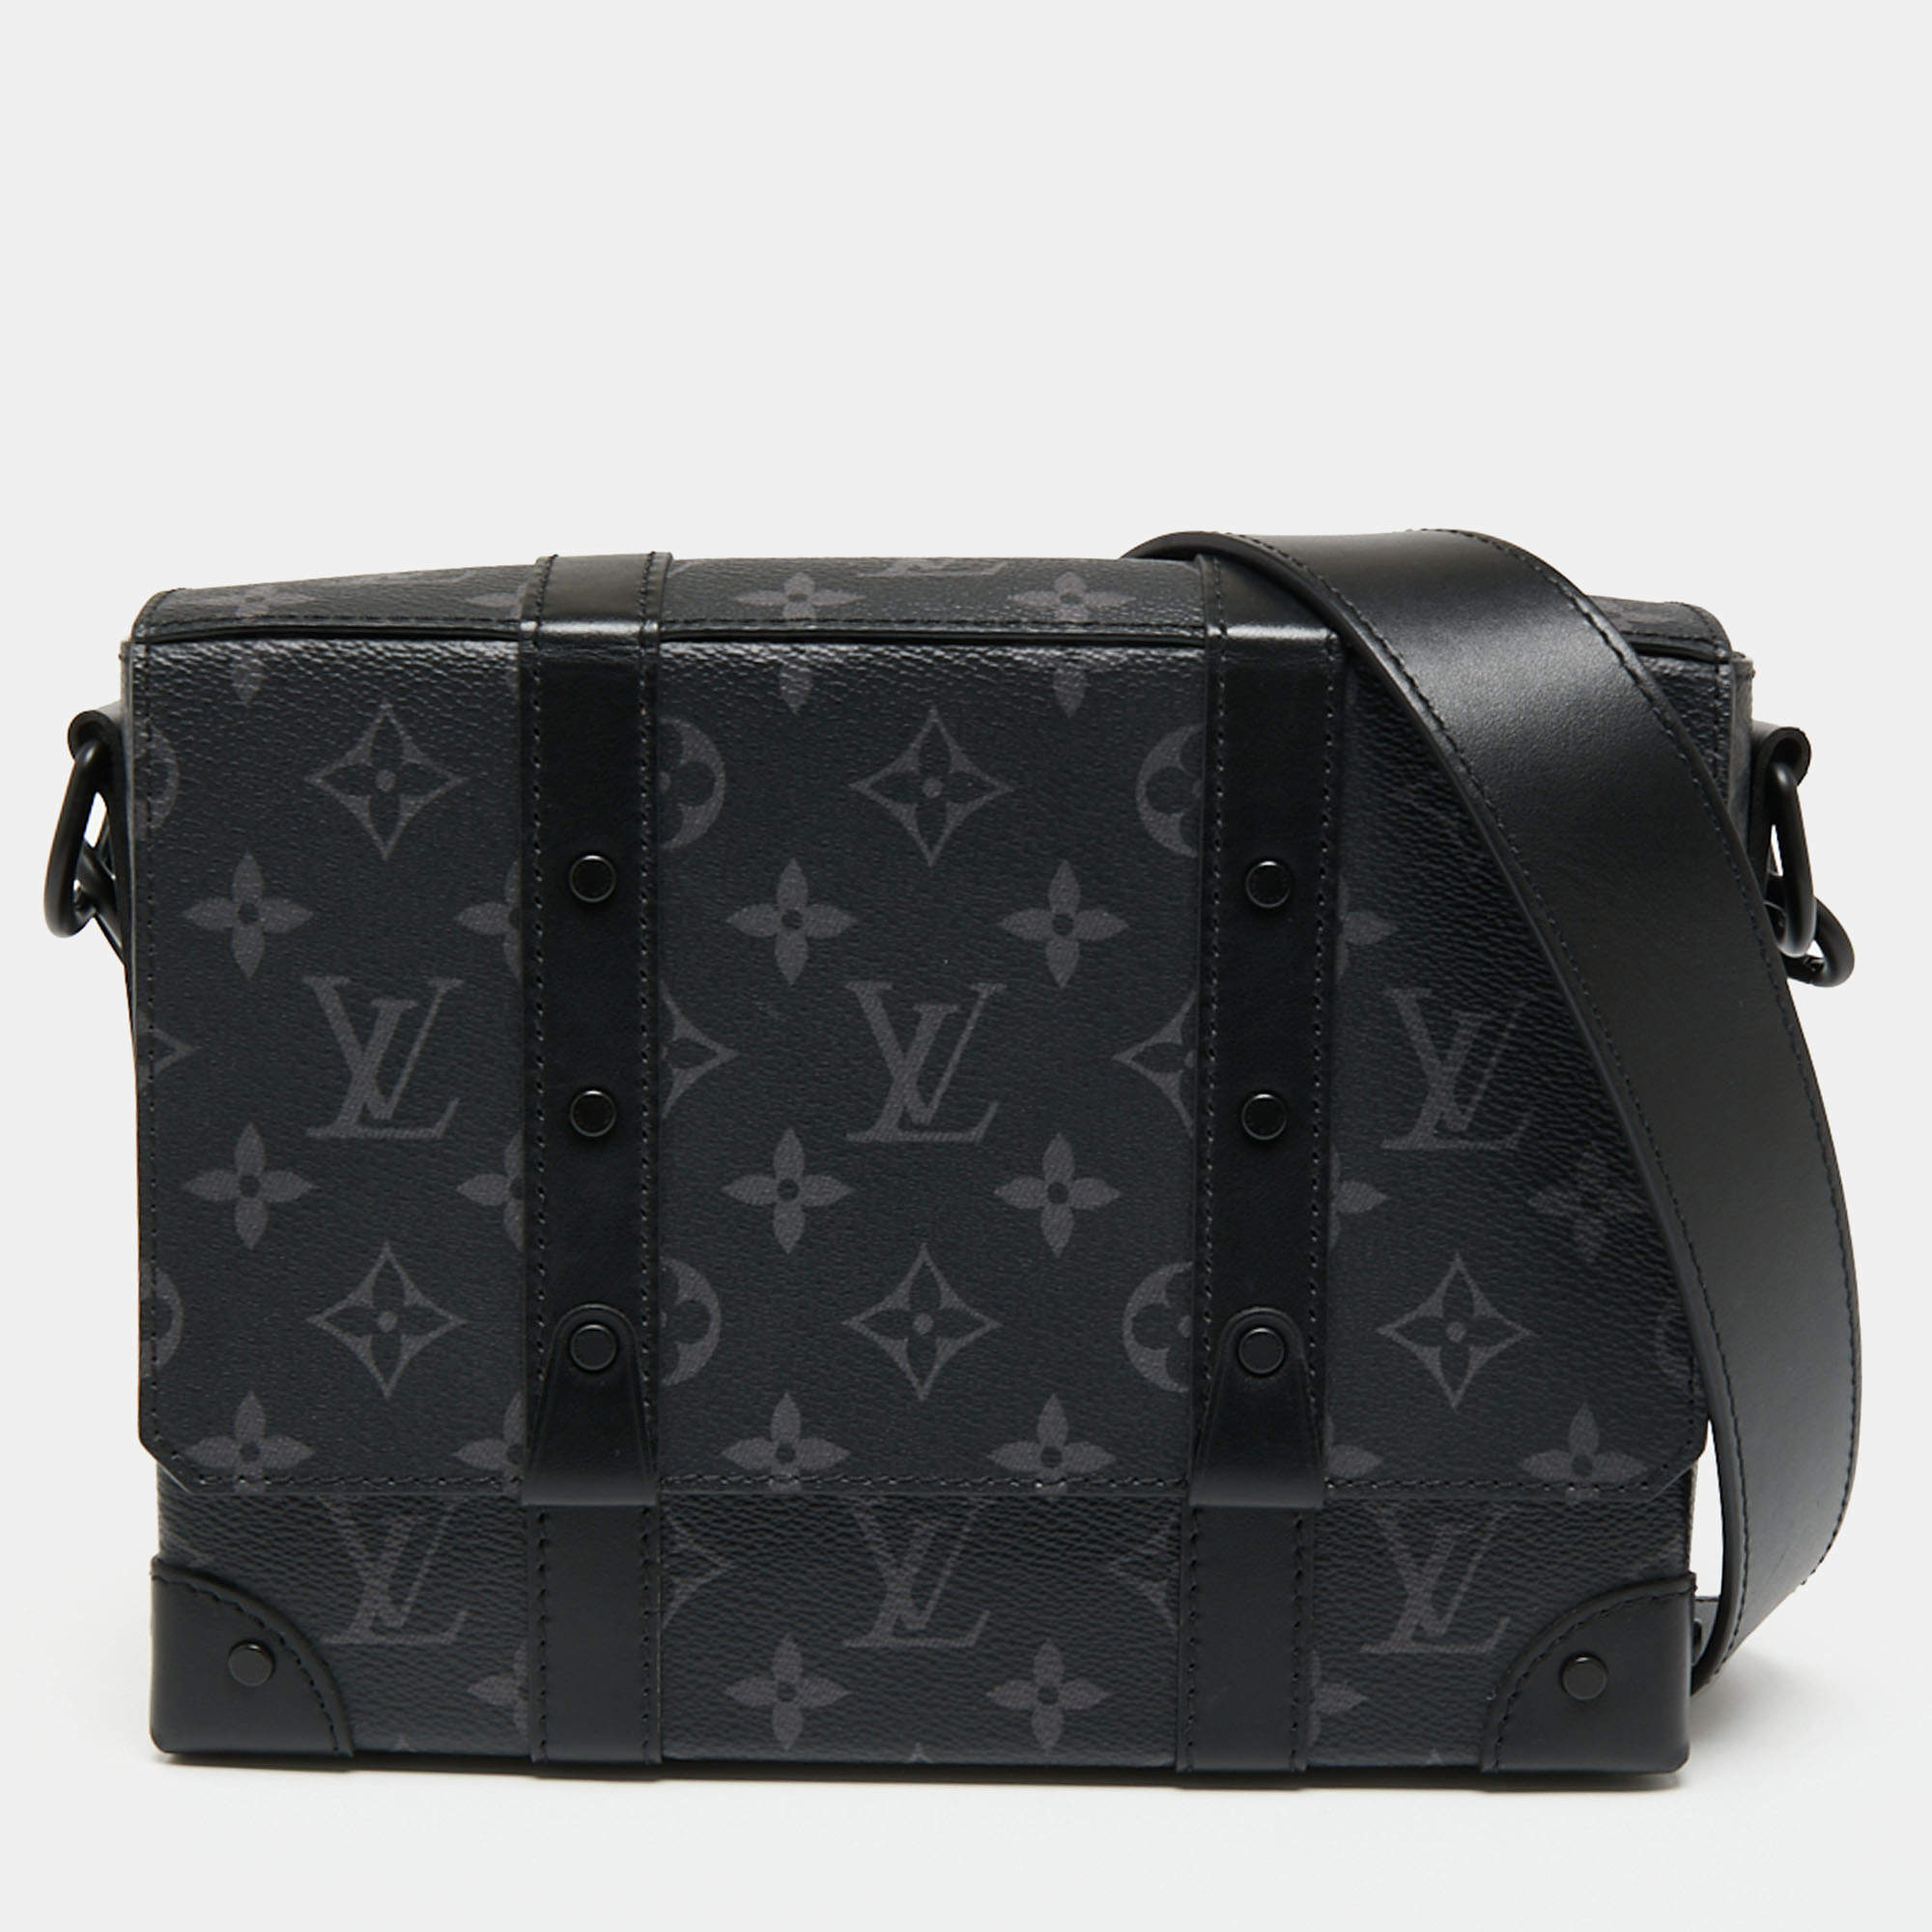 Shop Louis Vuitton MONOGRAM Louis Vuitton TRUNK MESSENGER BAG by